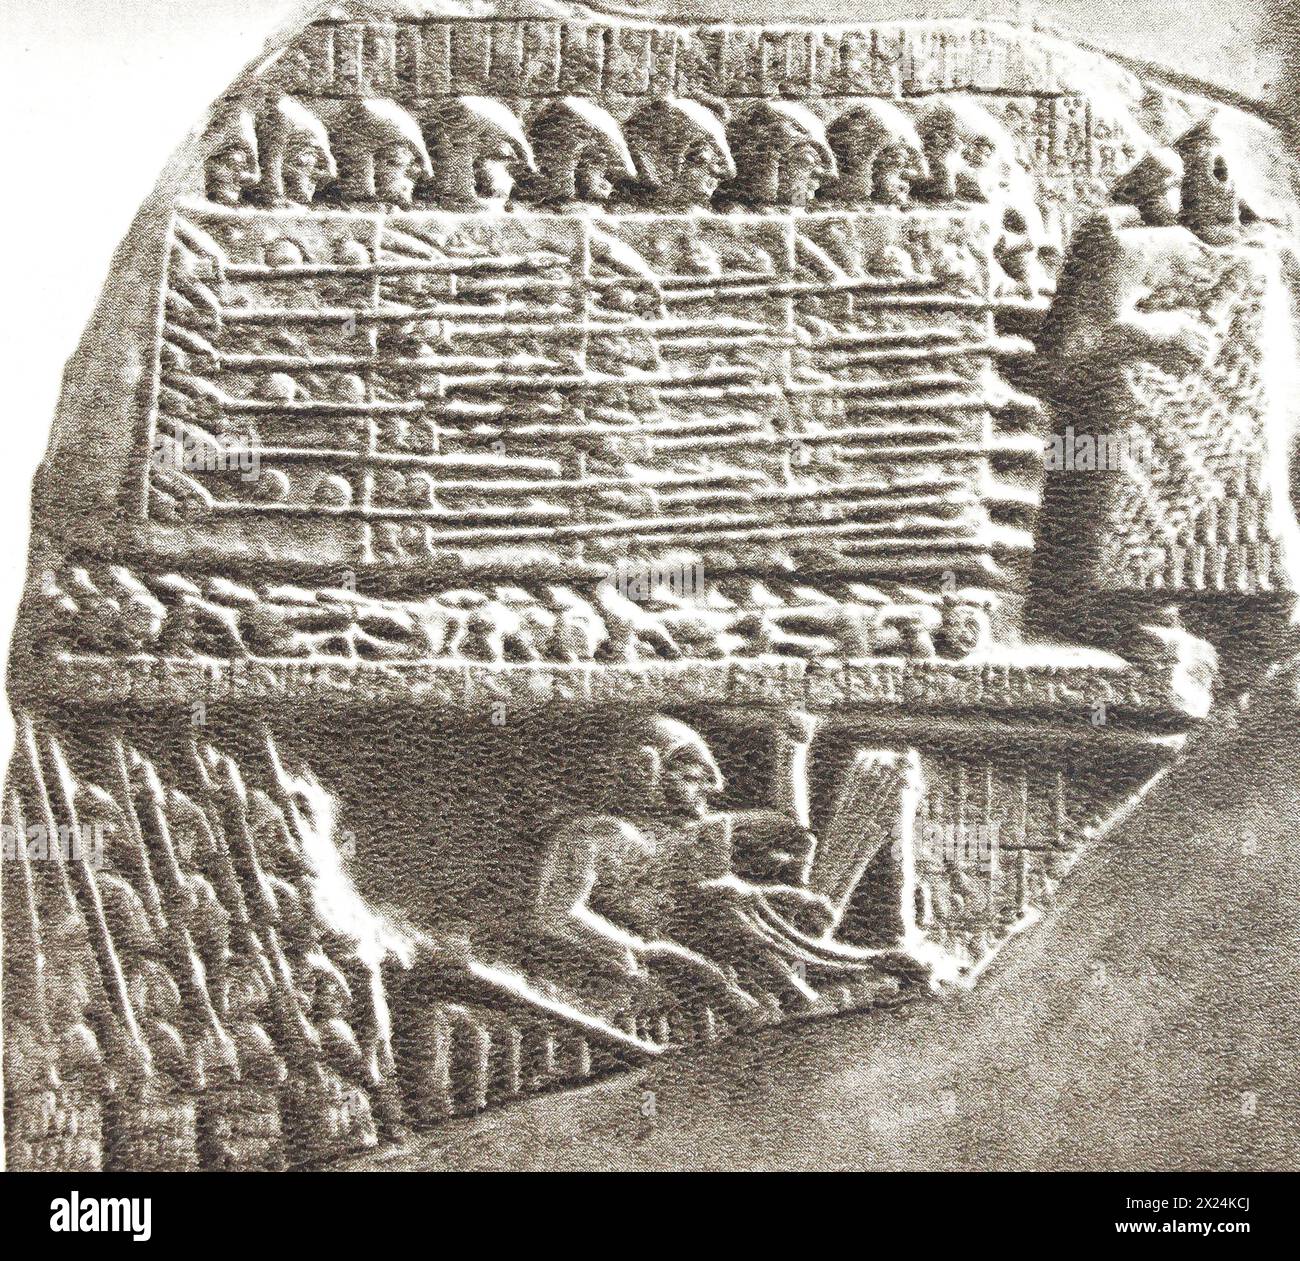 Fragment der Stele der Drachen - ein Denkmal für den Sieg von König Eannatum über die Stadt Umma. Foto aus der Mitte des 20. Jahrhunderts. Stockfoto